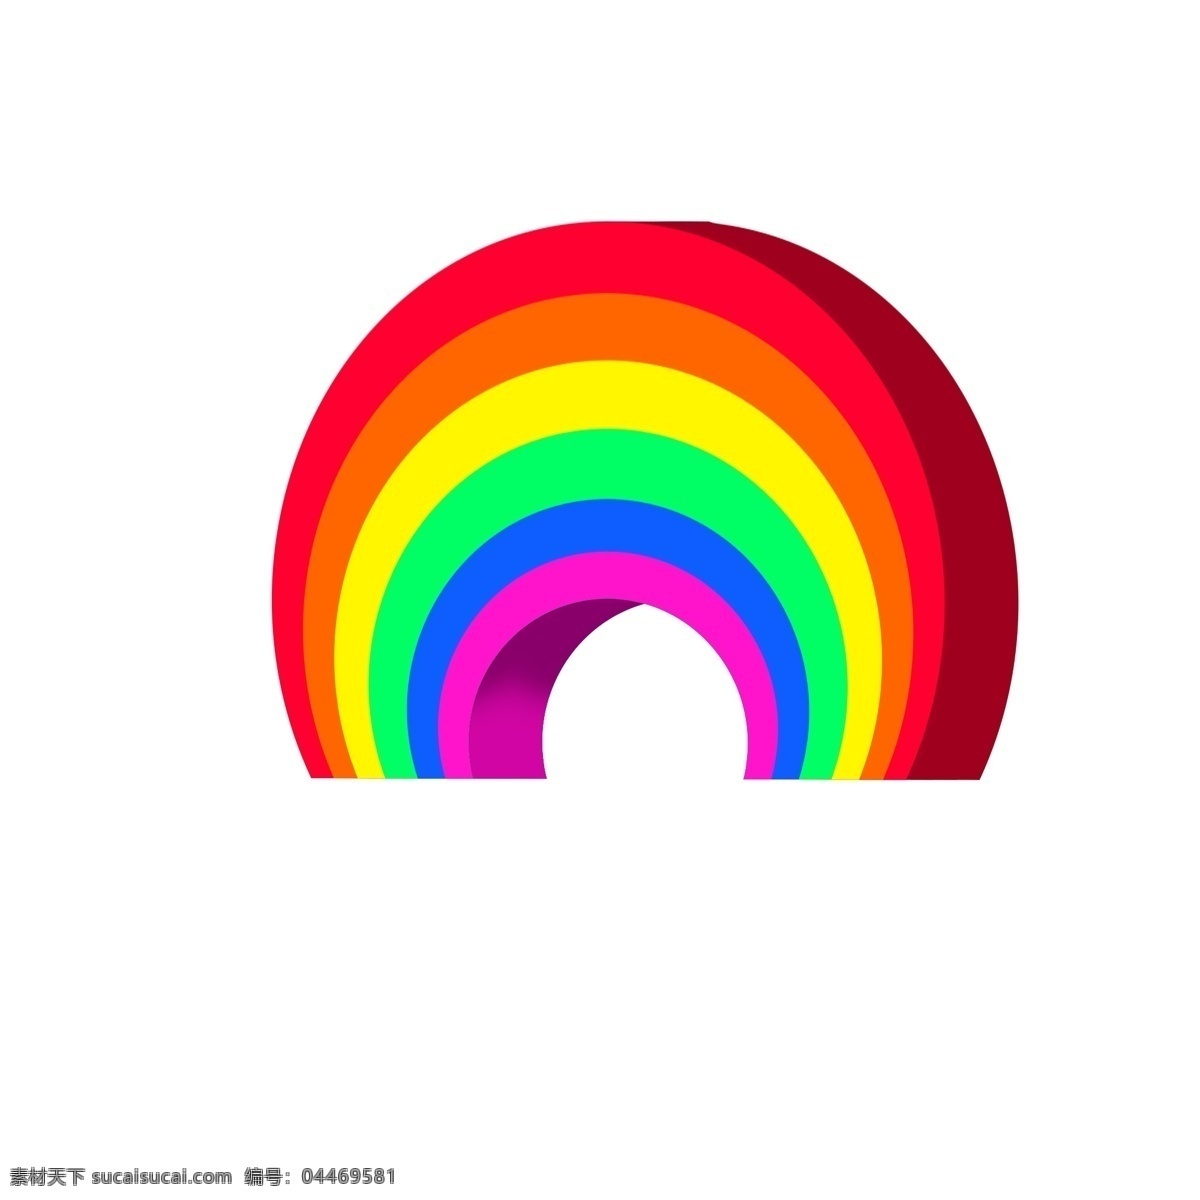 彩色 纹理 彩虹 元素 创意 卡通 插画 弧度 矢量图 光泽